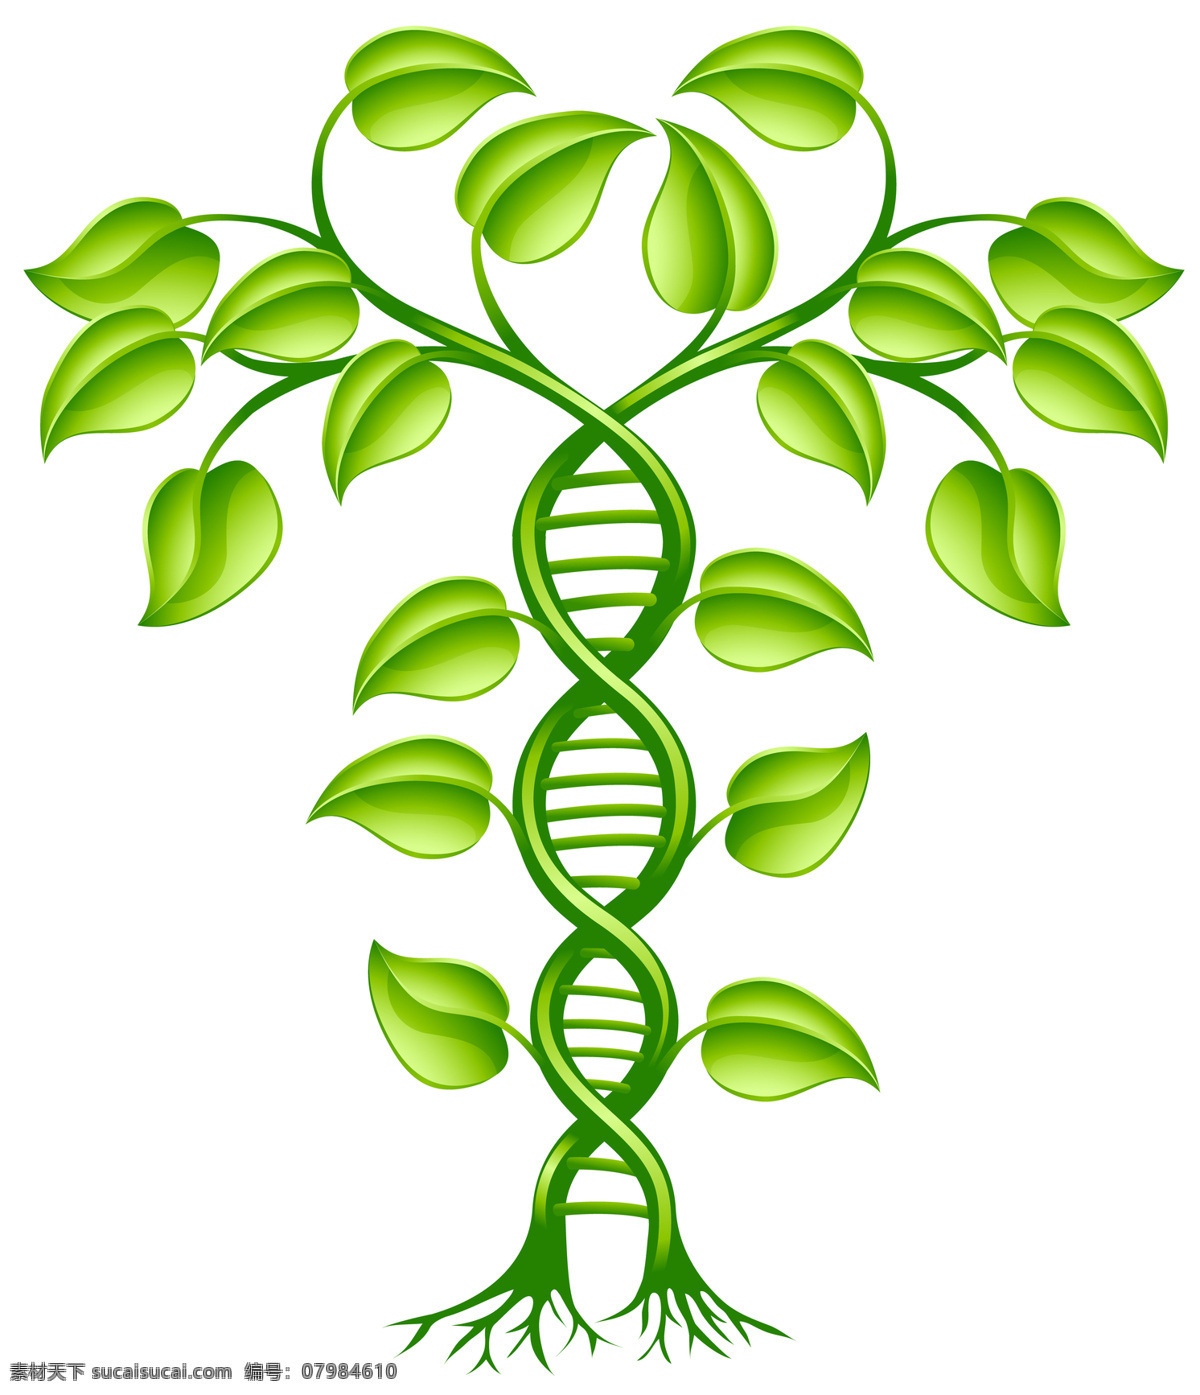 基因dna dna结构图 dna背景 科技背景 dna分子 螺旋 科学分子 基因 基因链 生物 化学 生物化学 生物技术 遗传 遗传病 染色体 医学 医疗 基因组 医疗保健 生活百科 摄影图片 现代科技 科学研究